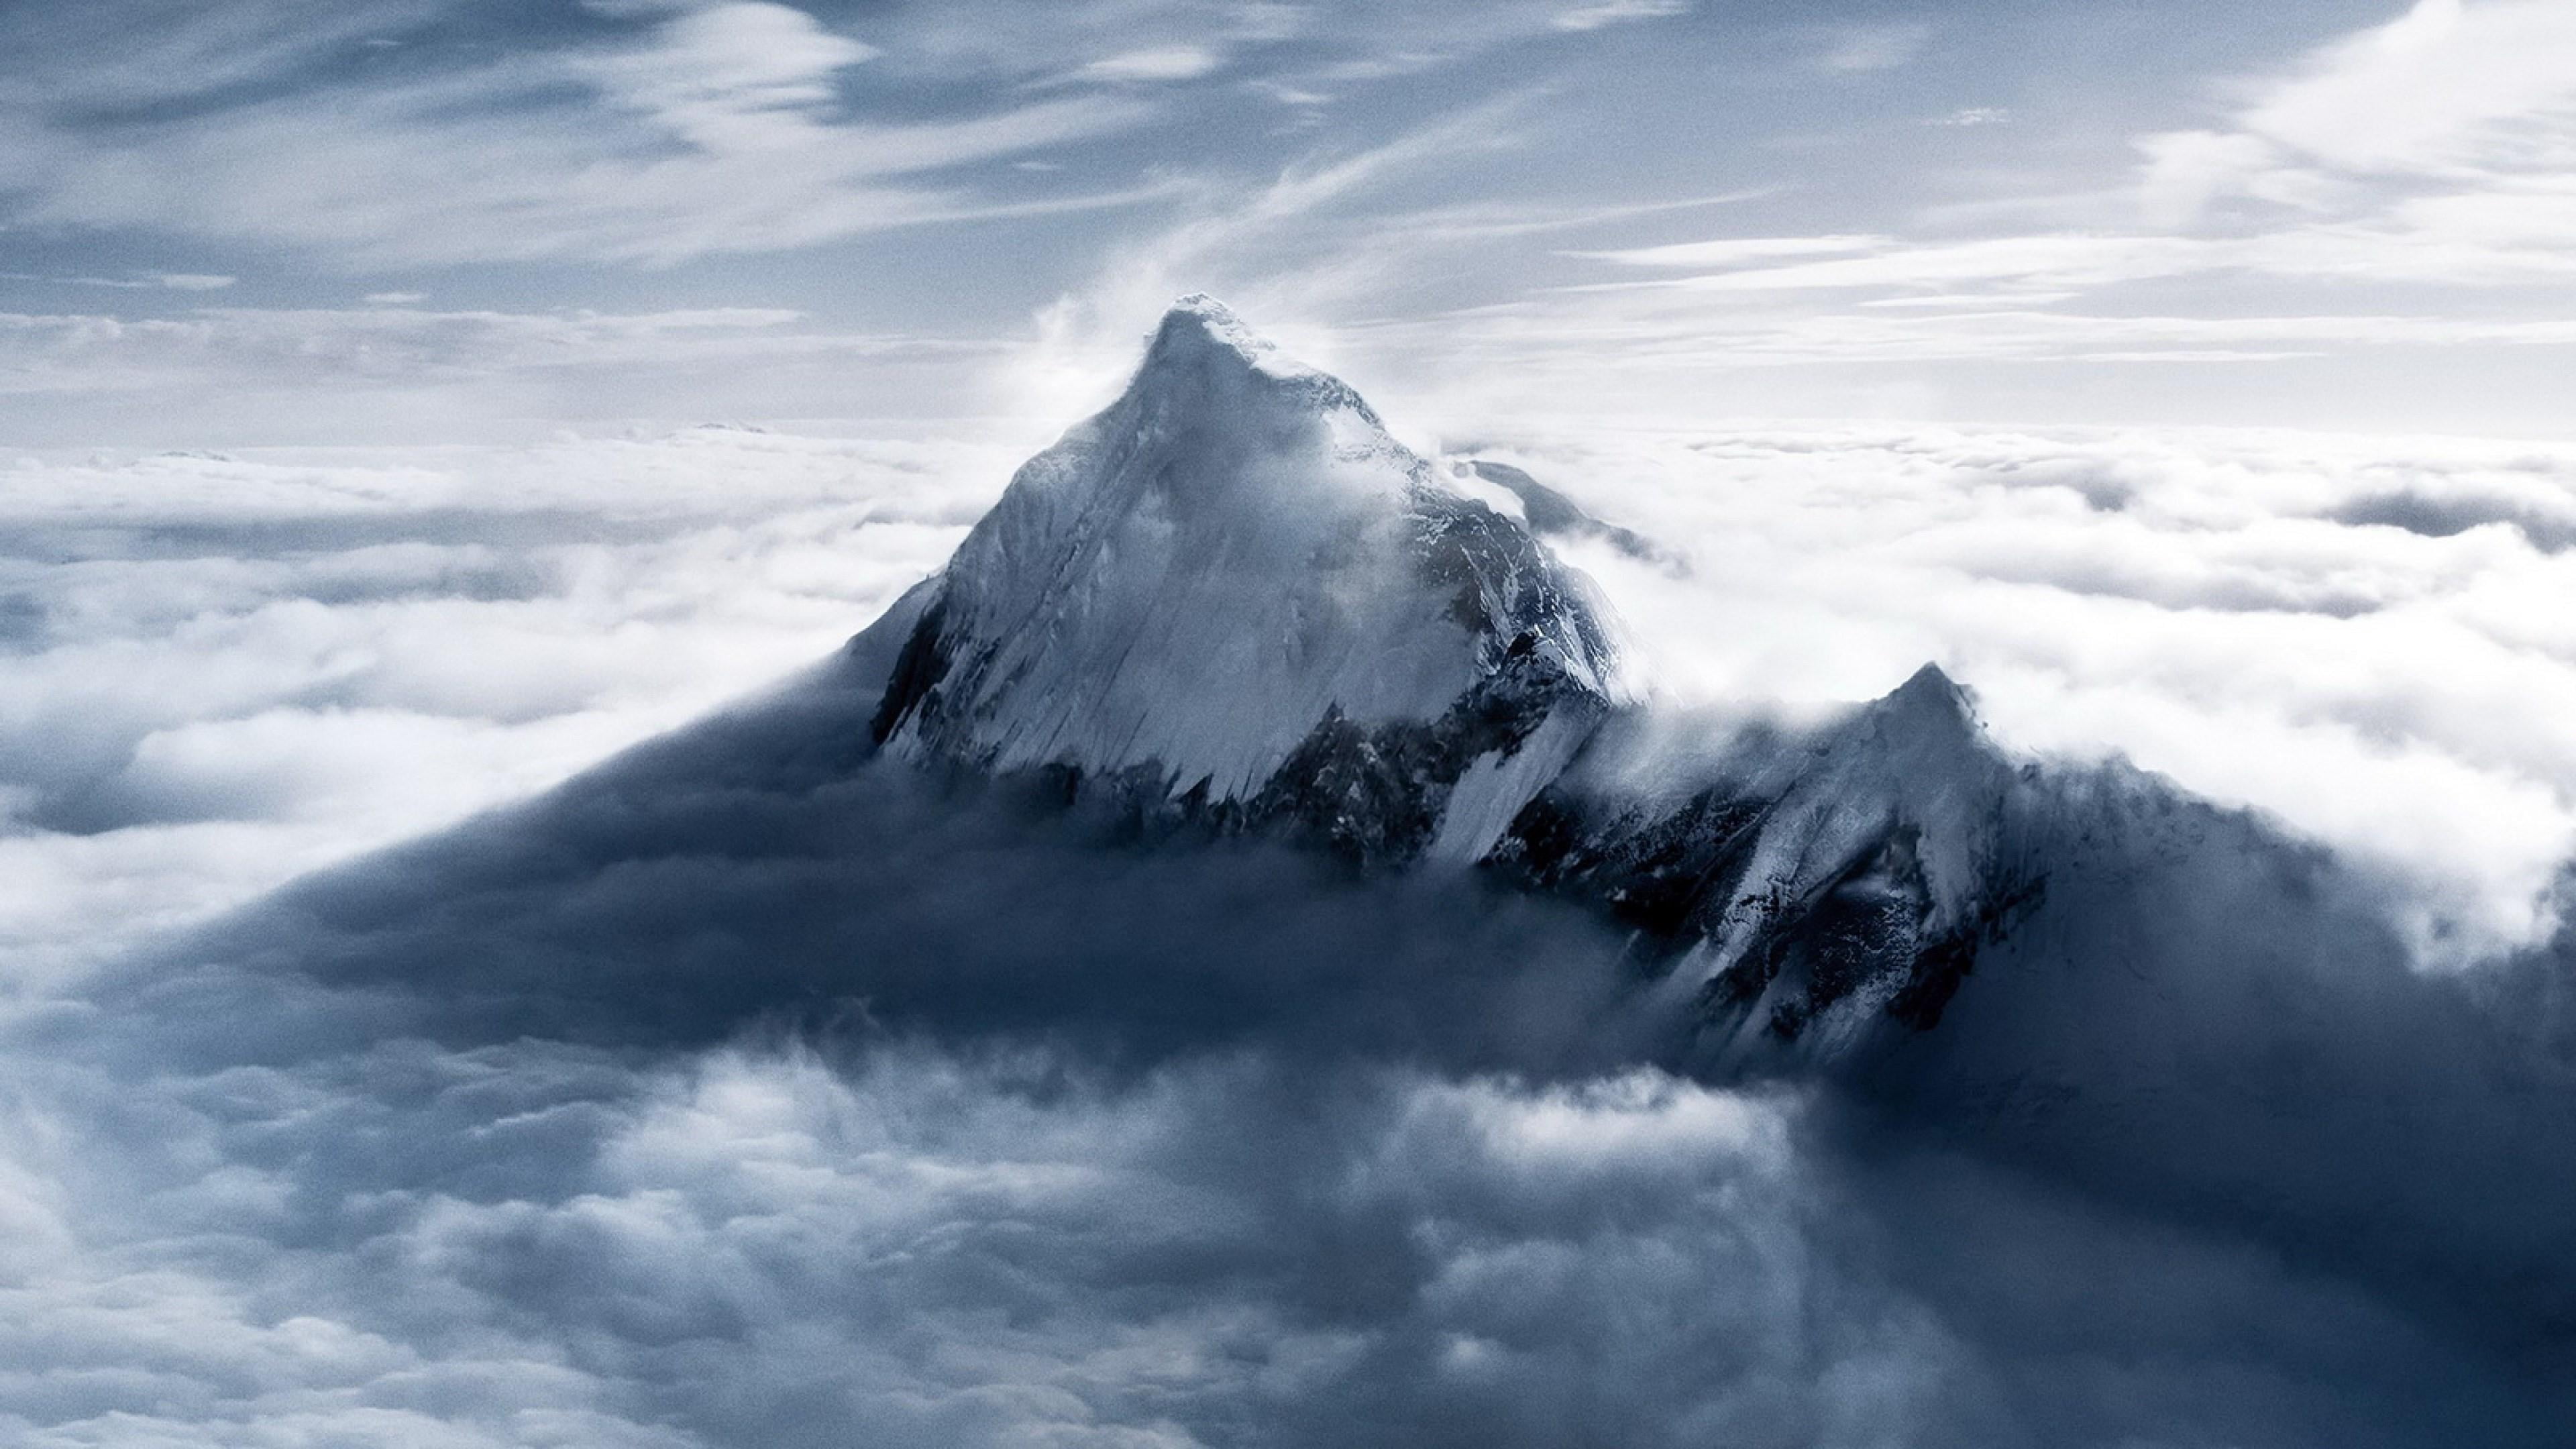 everest, mountain, cloud, peak, mount everest, snowy, cloud - sky